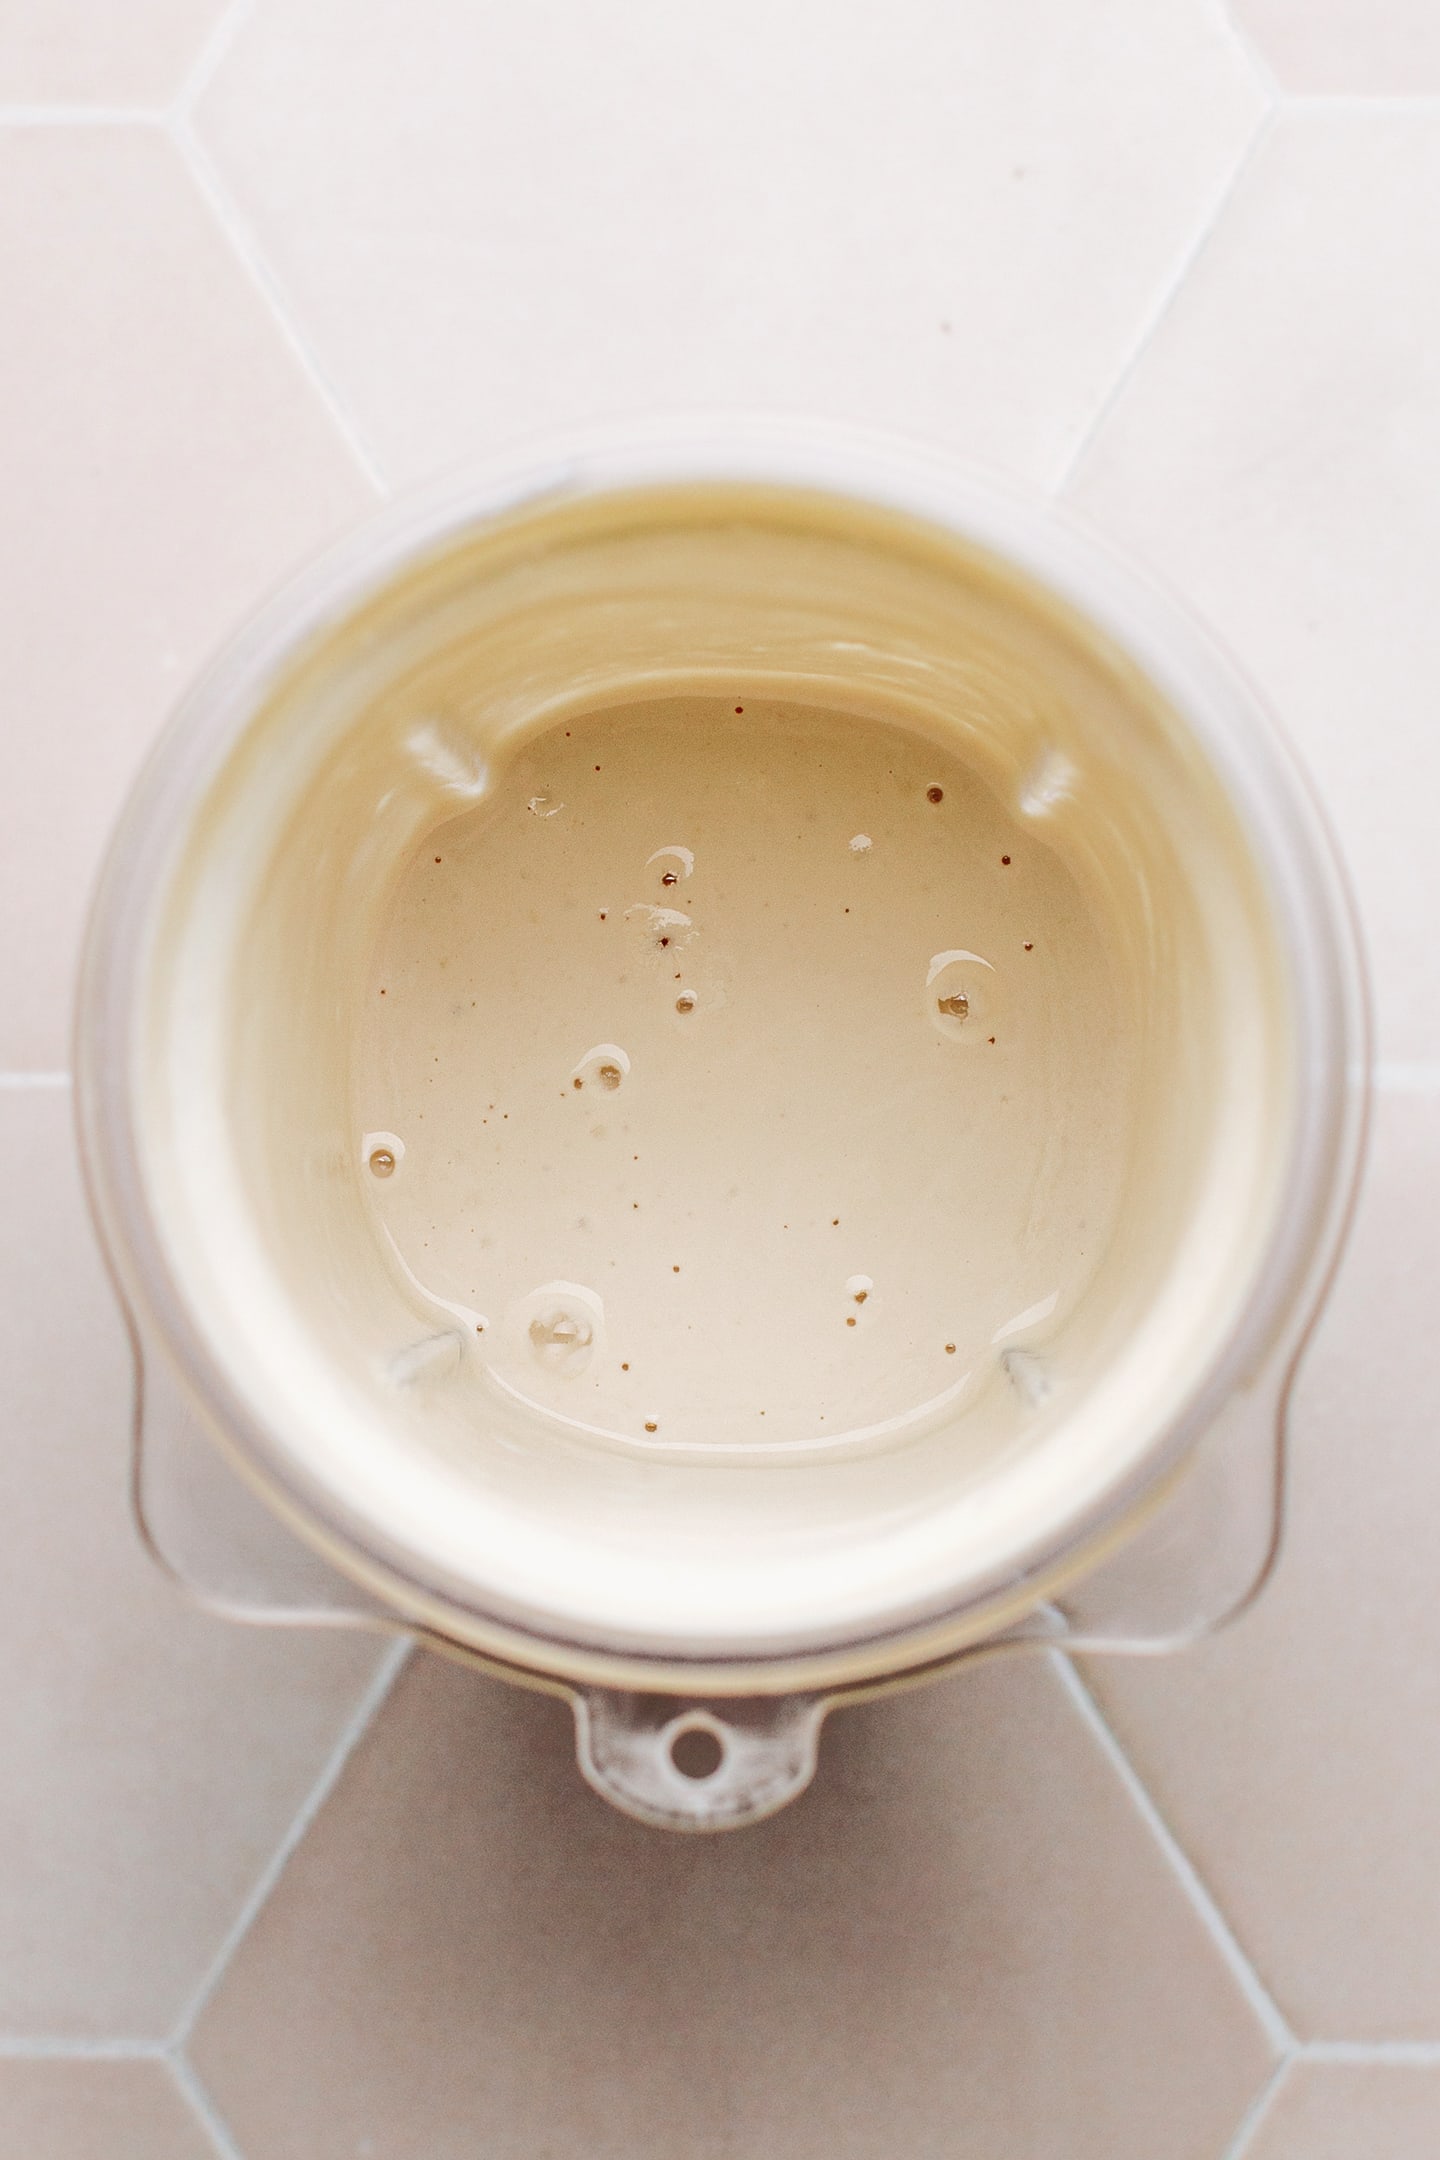 Cashew cream in a blender.